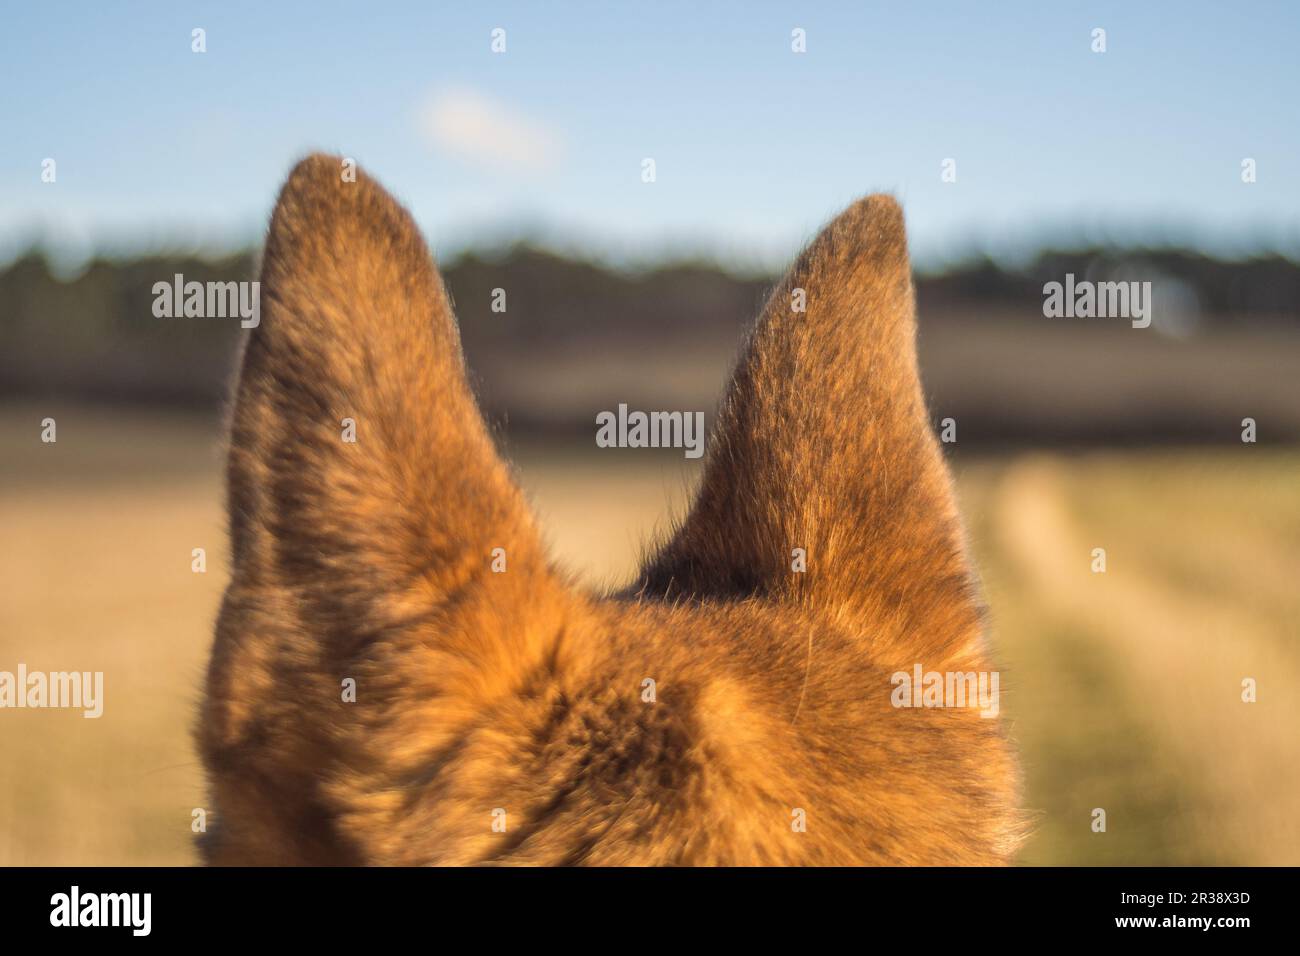 German shepherd ears Stock Photo